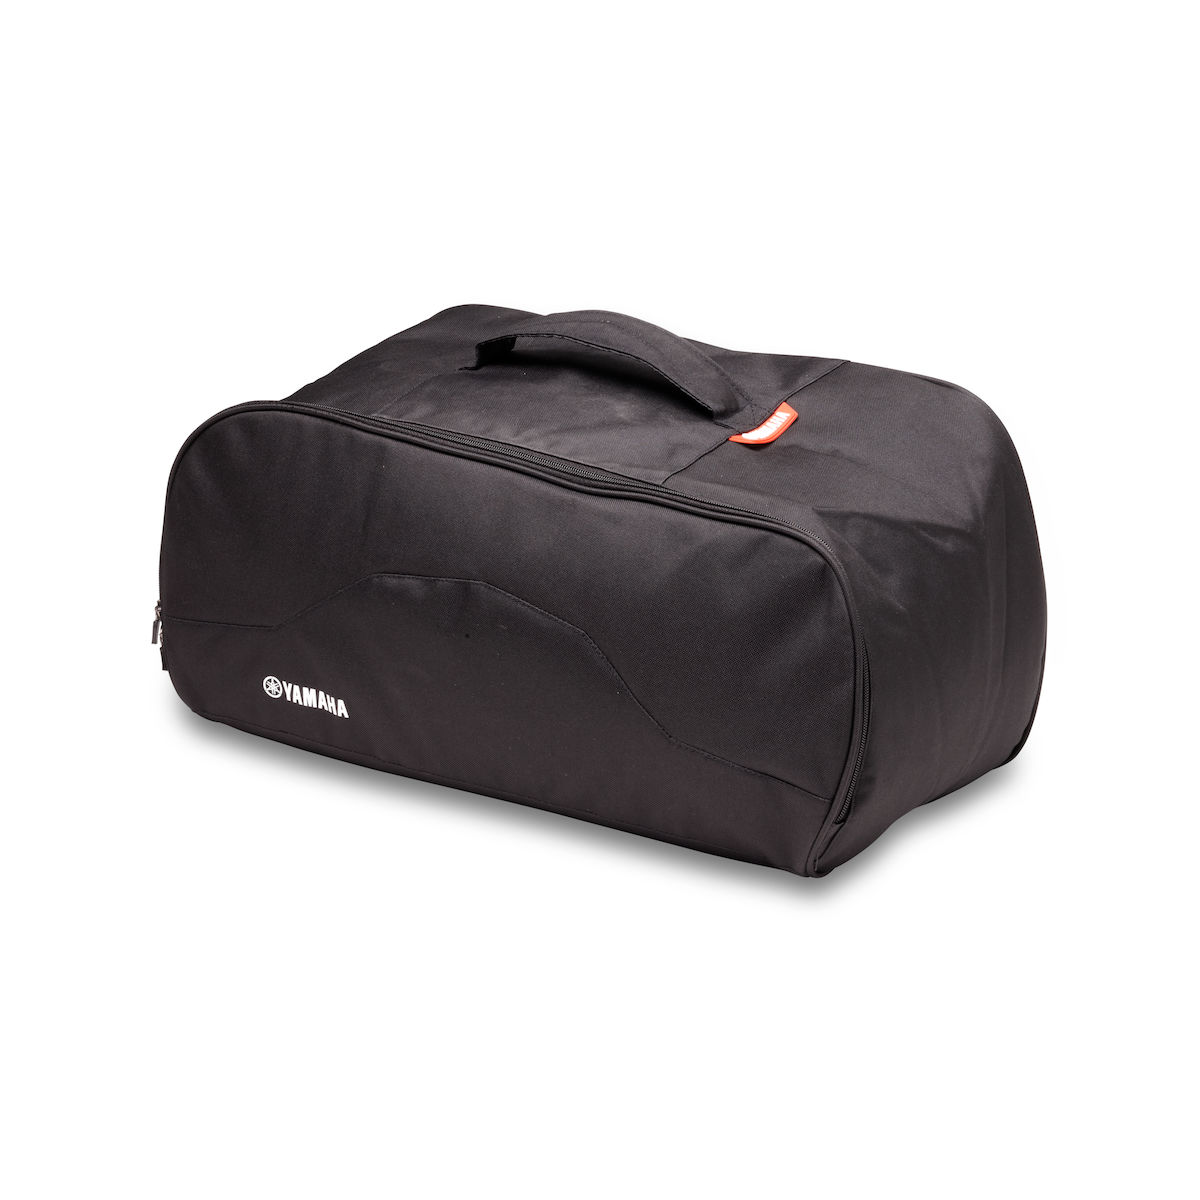 Jól illeszkedő puha táska, amely az opcionális Yamaha 50 literes City hátsó doboz belsejébe helyezhető.